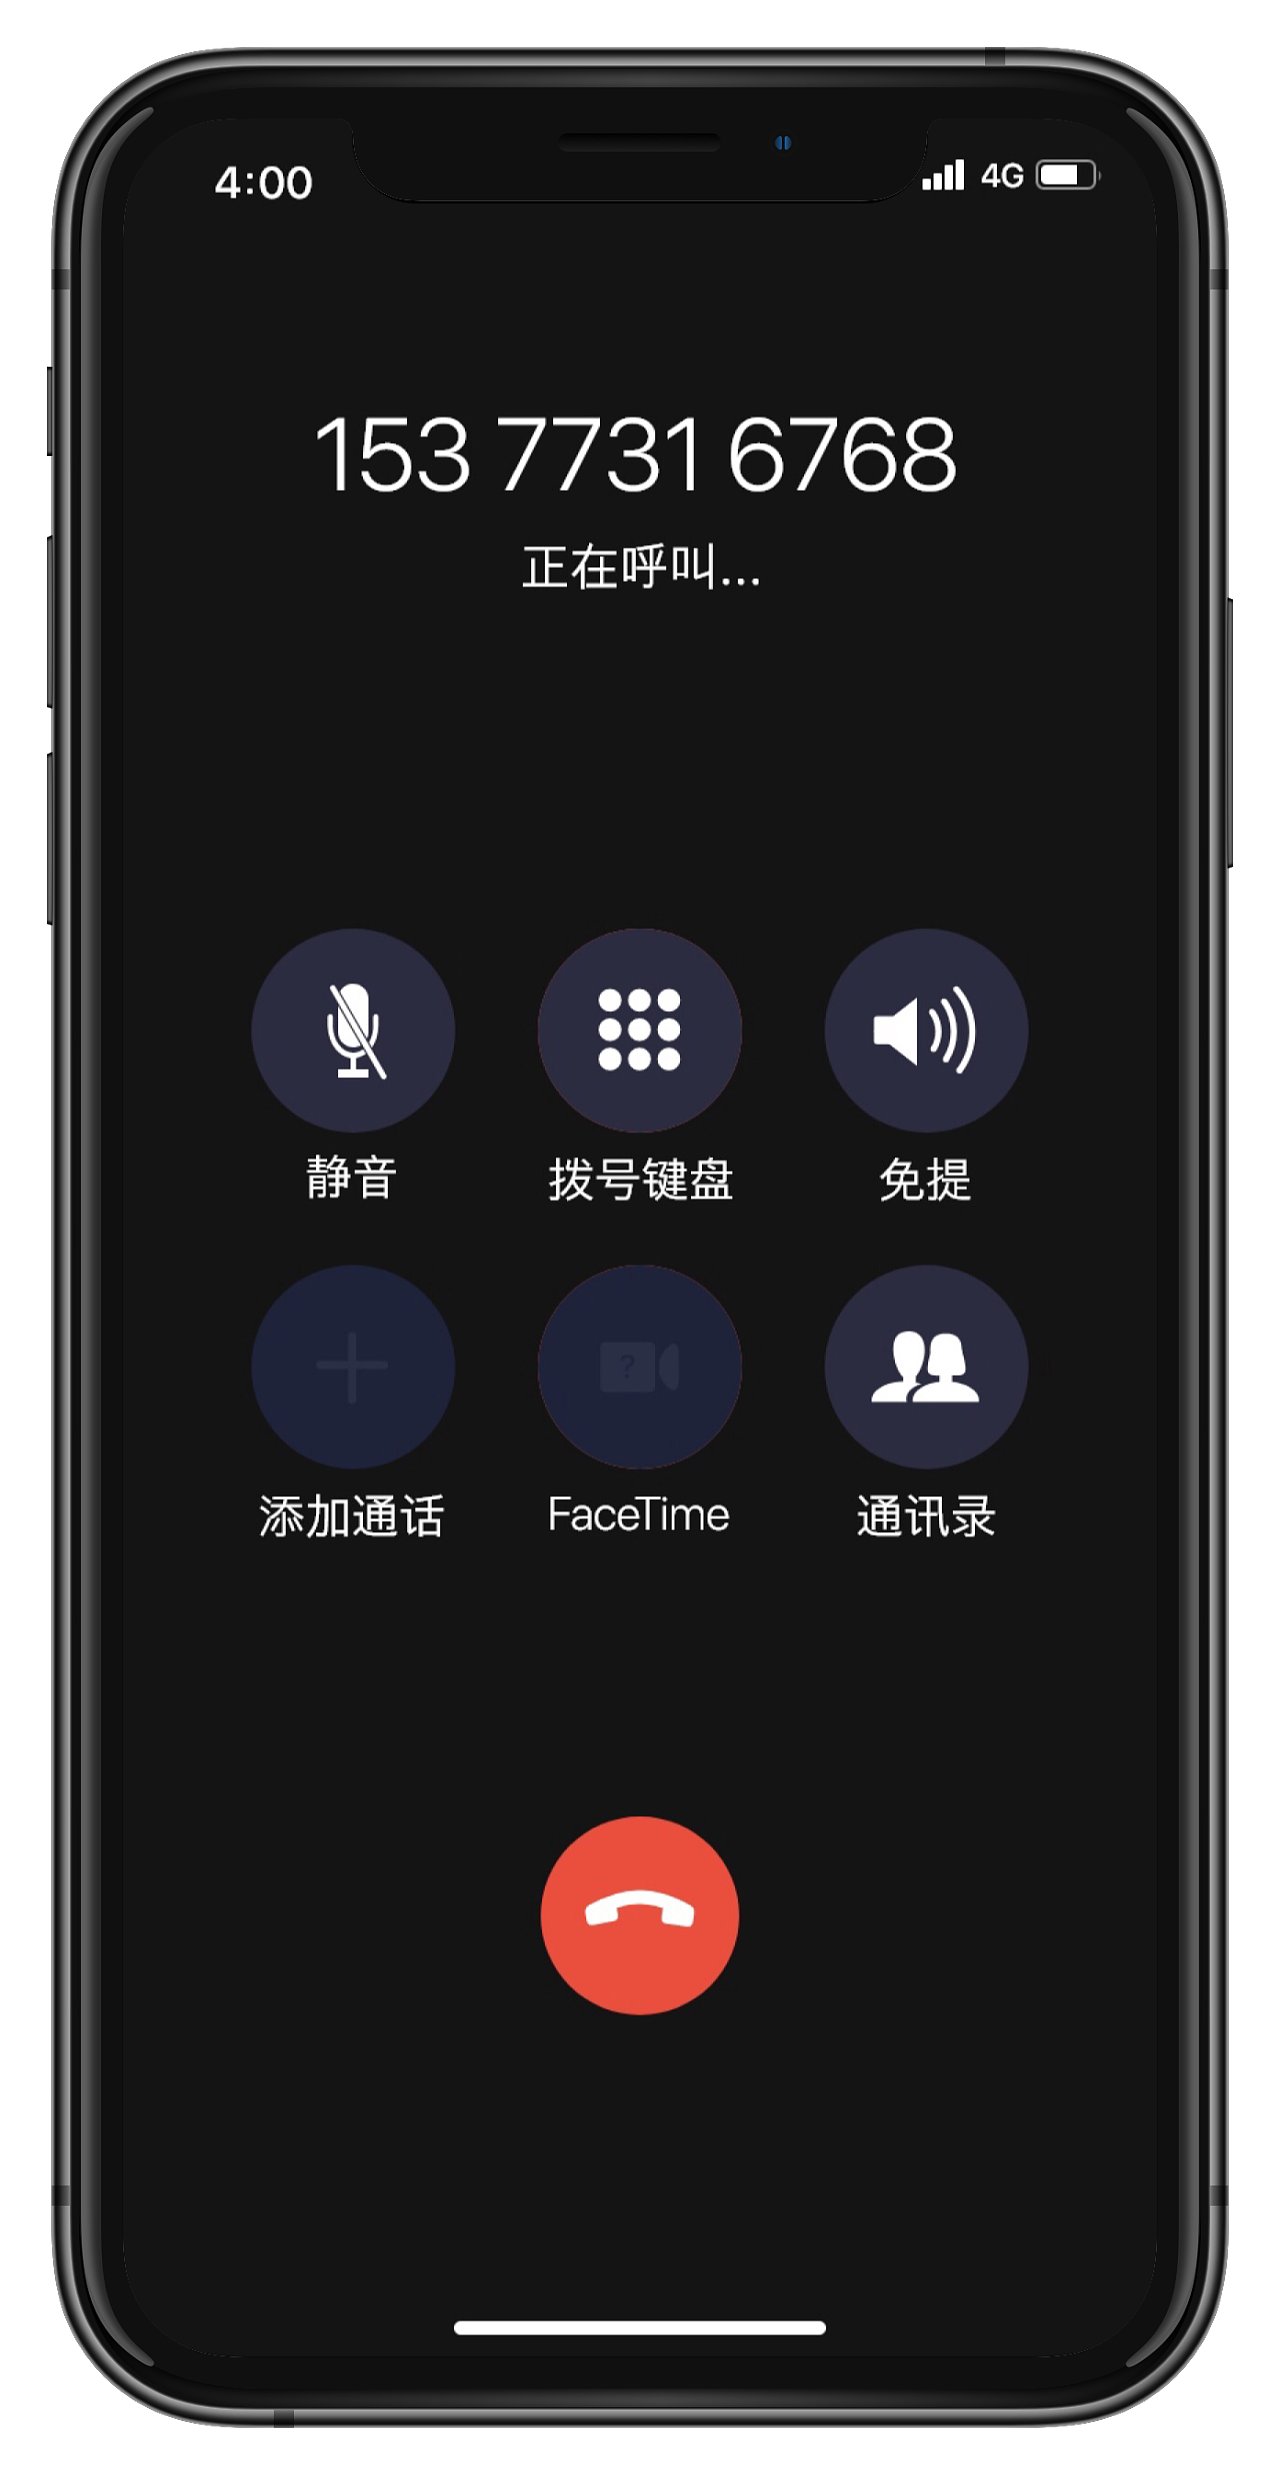 医院有线通话呼叫系统方案--郑州多嘴猫电子技术有限公司